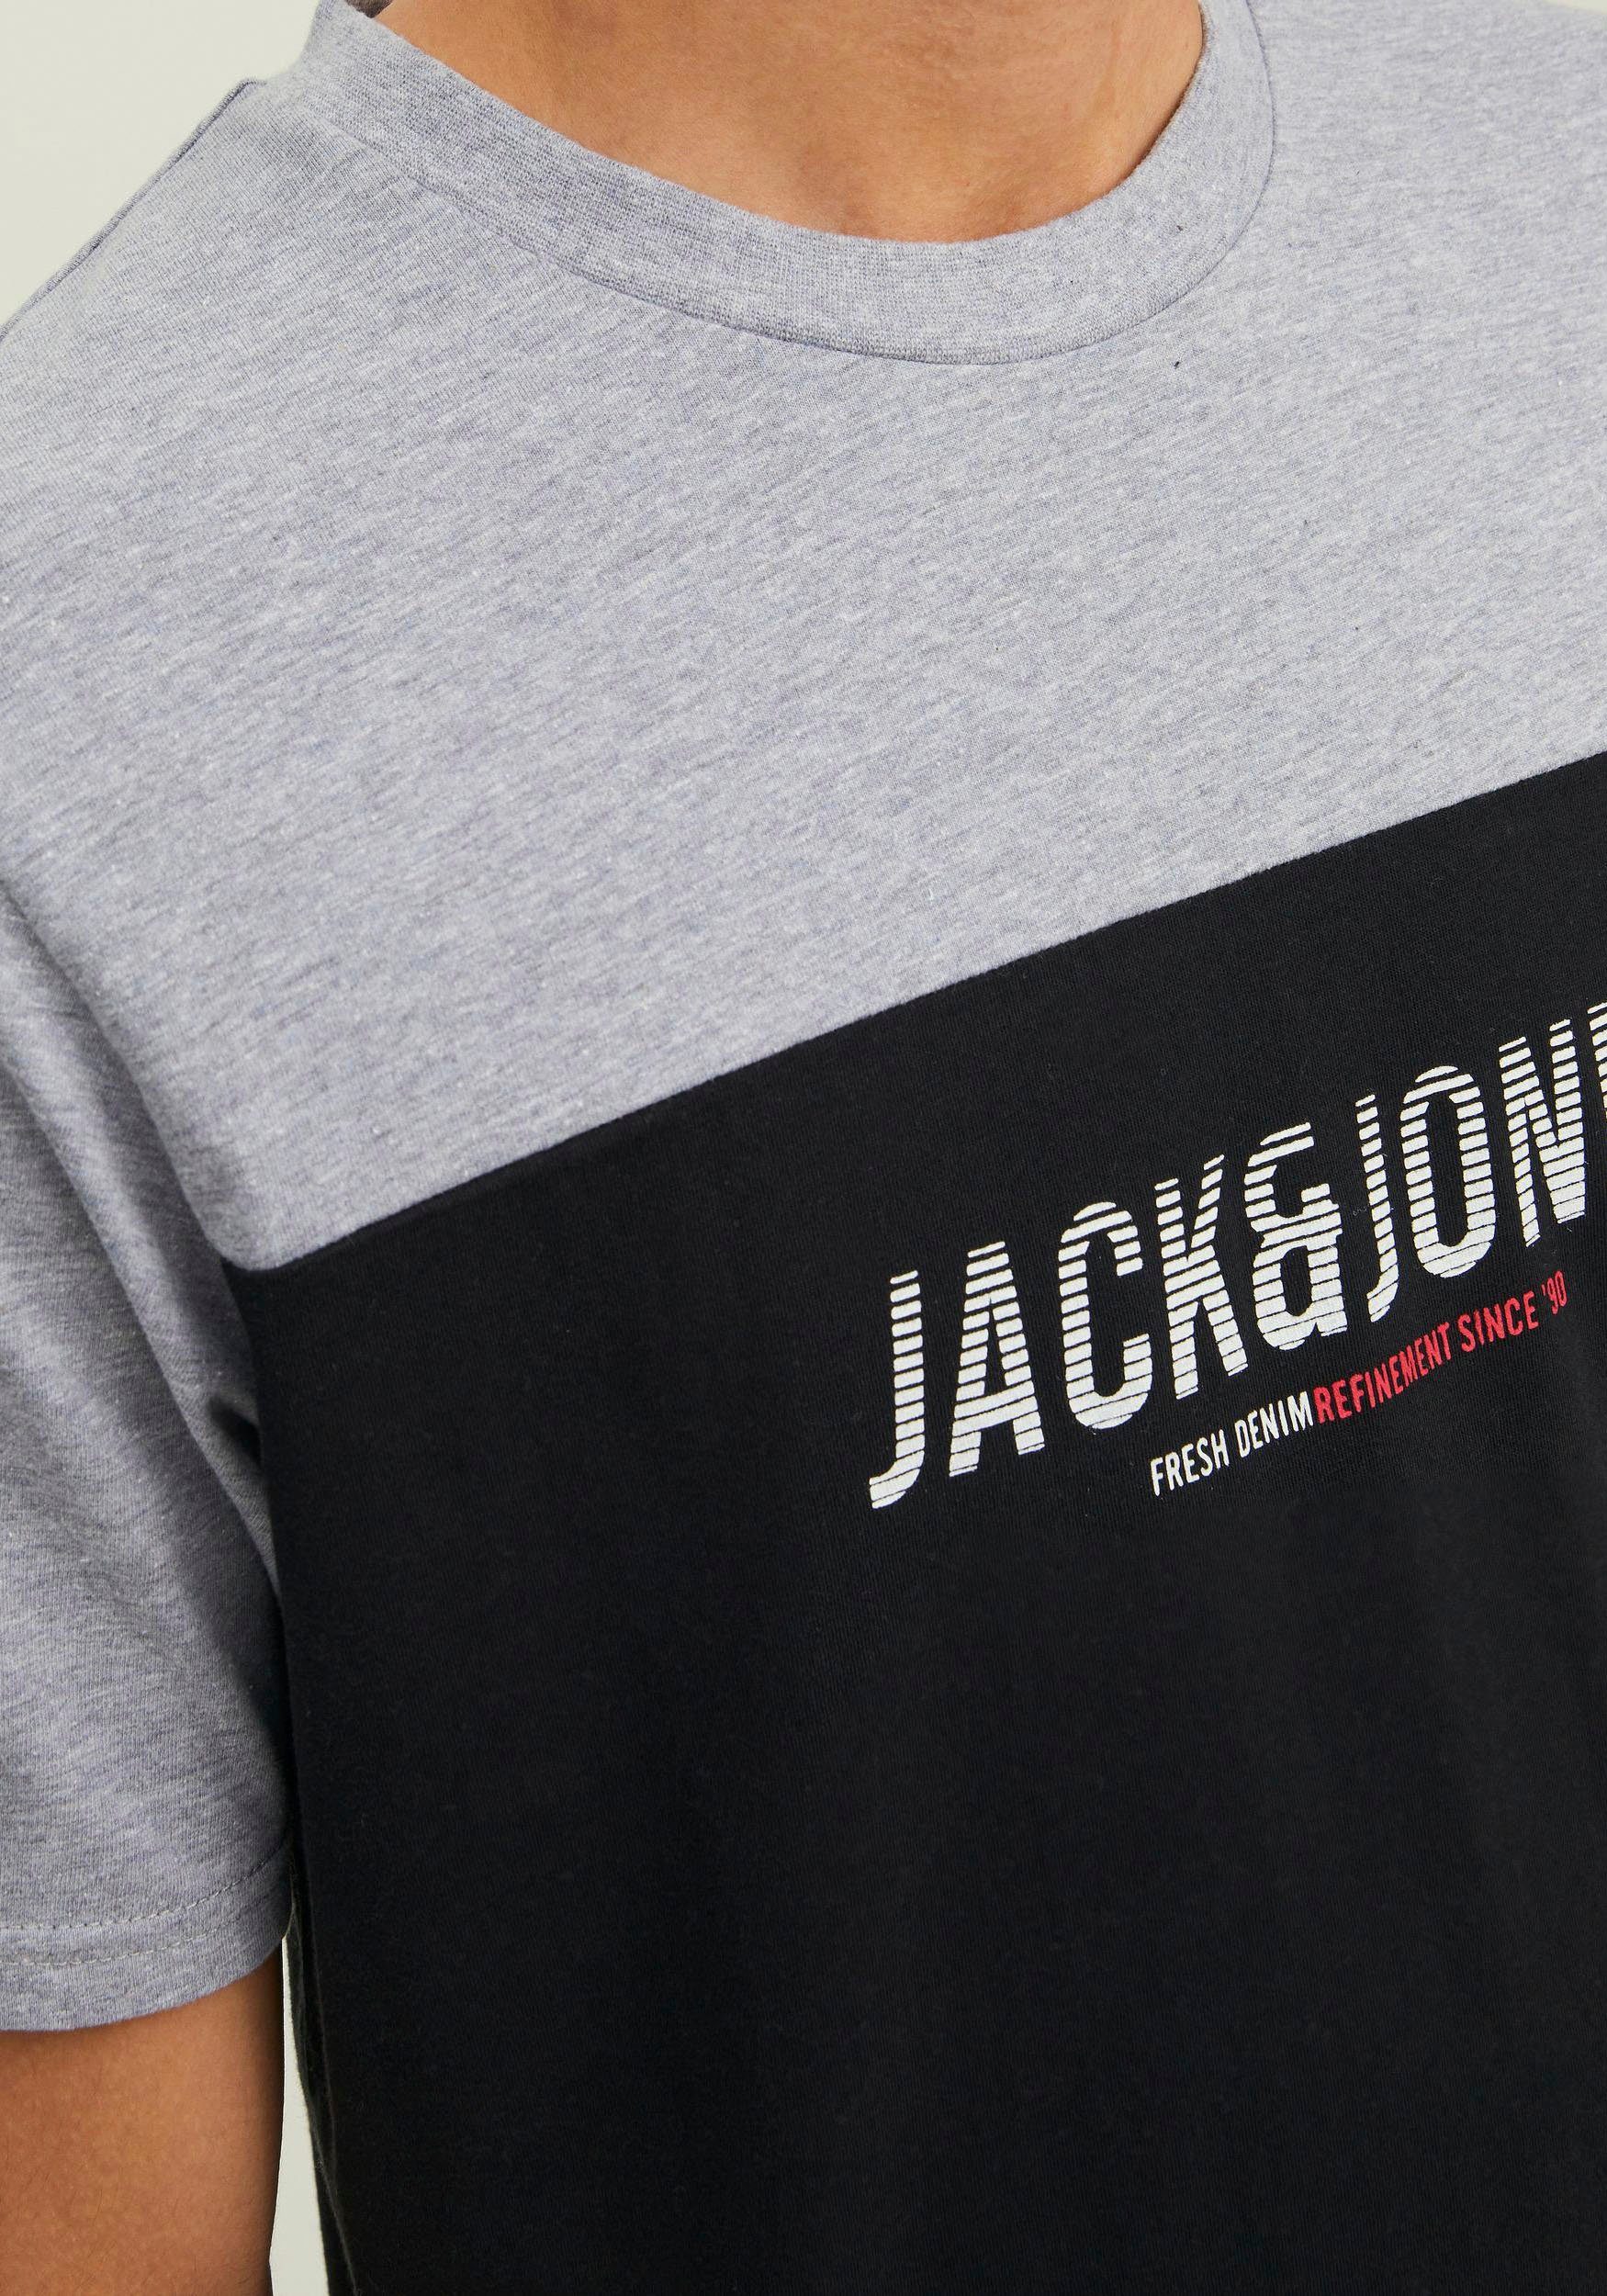 Jack & Jones TEE BLOCKING DAN Rundhalsshirt schwarz